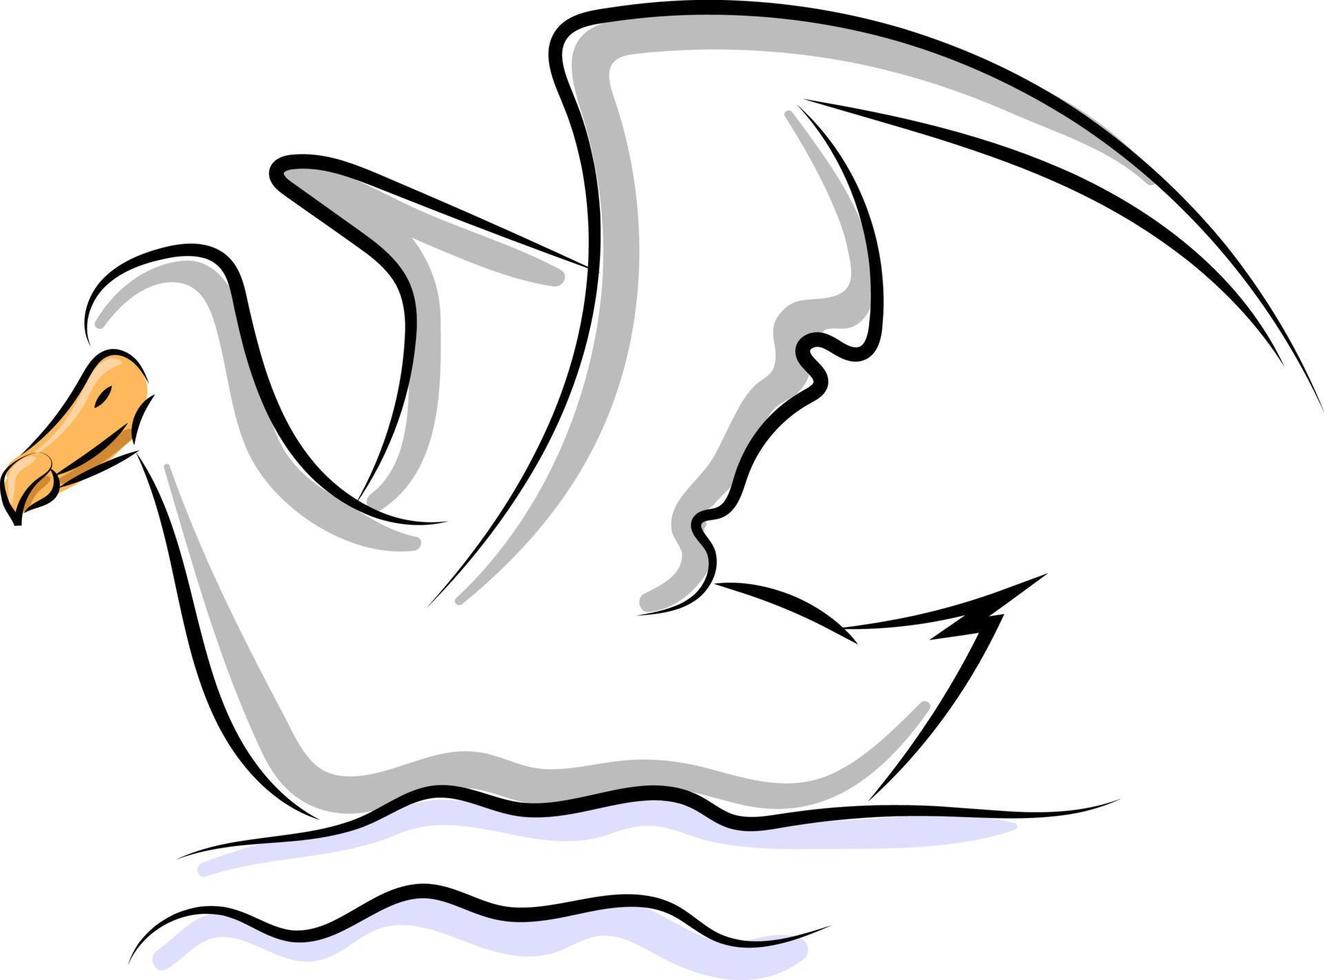 oiseau dans l'eau, illustration, vecteur sur fond blanc.